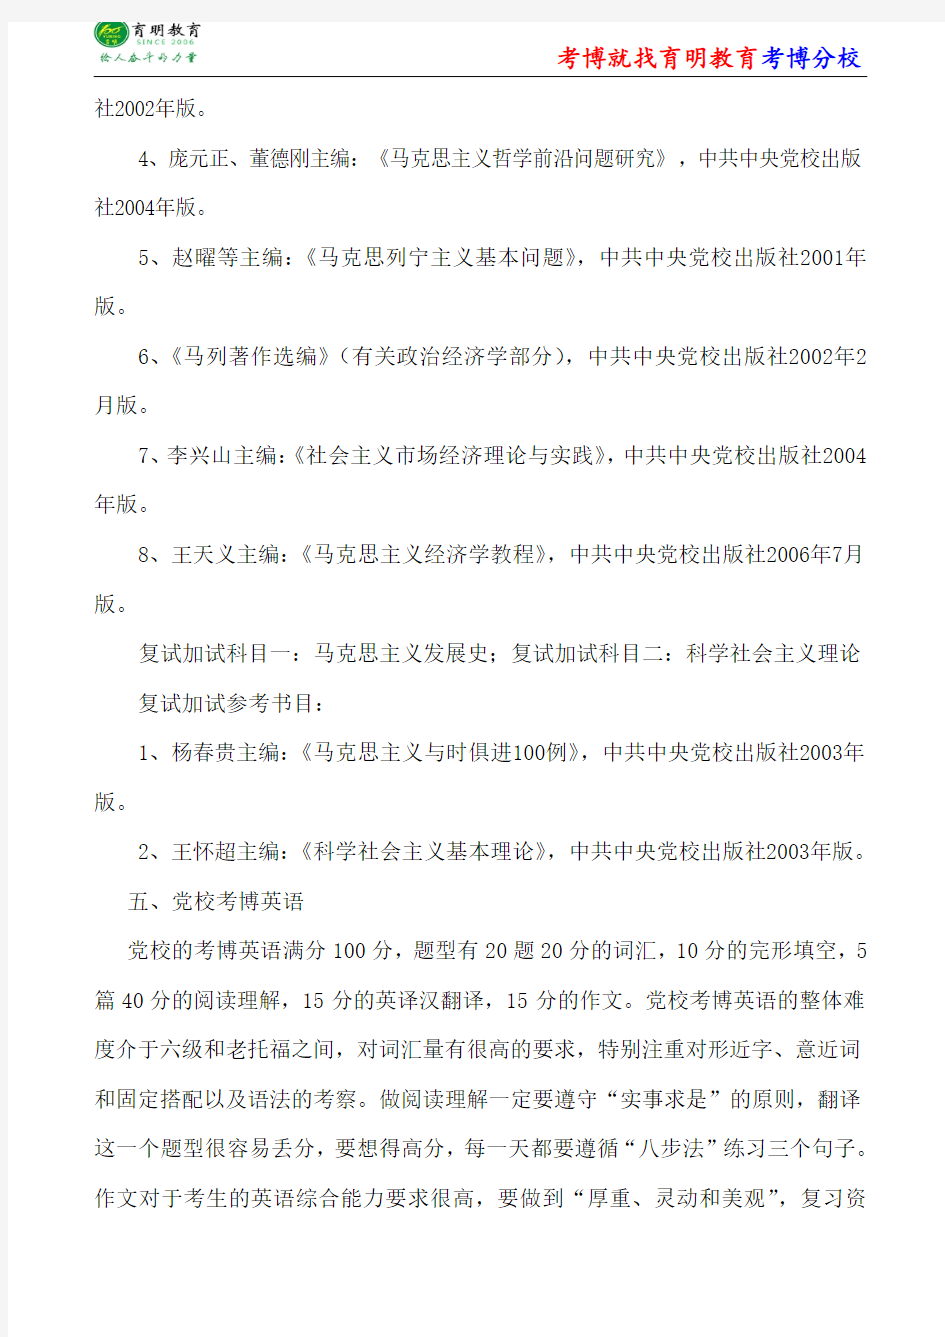 中共中央党校马克思主义发展史薛广洲中国马克思主义研究的历史与现实考博参考书-考博笔记资料-考博分数线